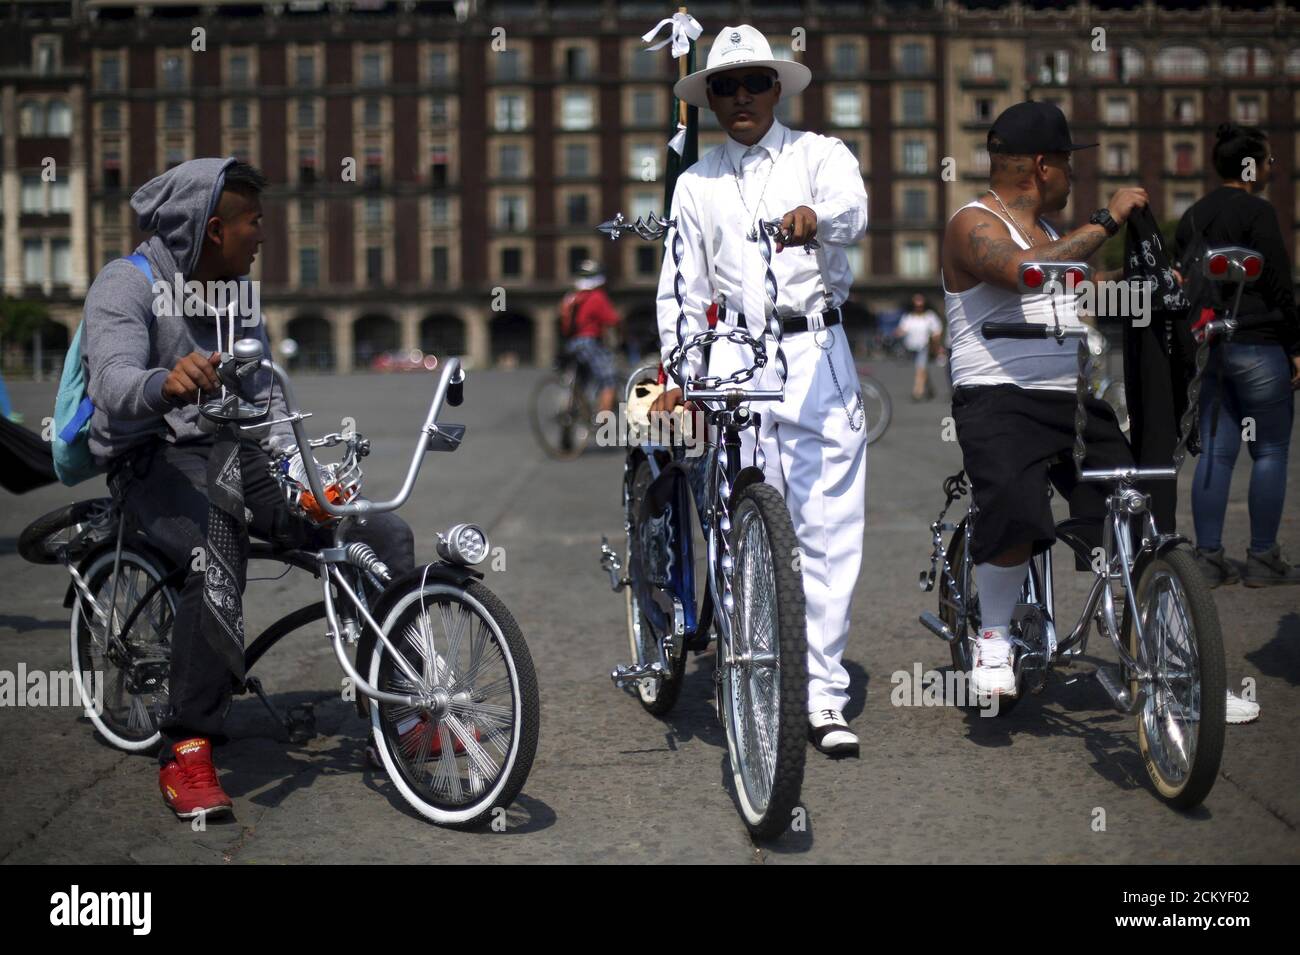 Los ciclistas se reúnen para formar una forma de bicicleta con el objetivo de promover el ciclismo como modo de transporte y conmemorar el día de la bicicleta, que se celebra anualmente el 19 de abril, en la plaza Zócalo en la Ciudad de México, México, el 10 de abril de 2016. REUTERS/Edgard Garrido Foto de stock